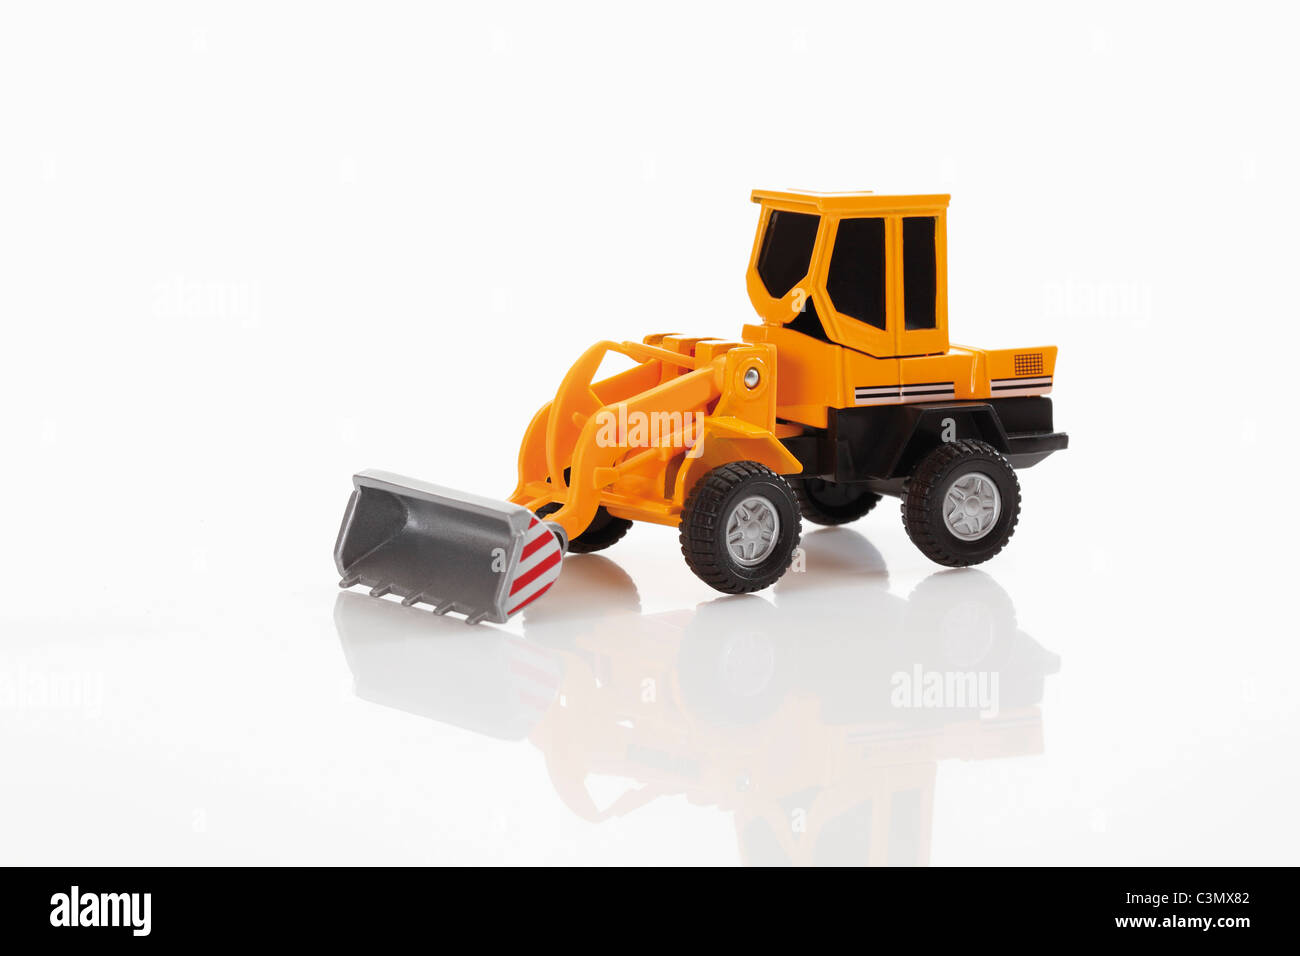 Toy bulldozer on white background Stock Photo